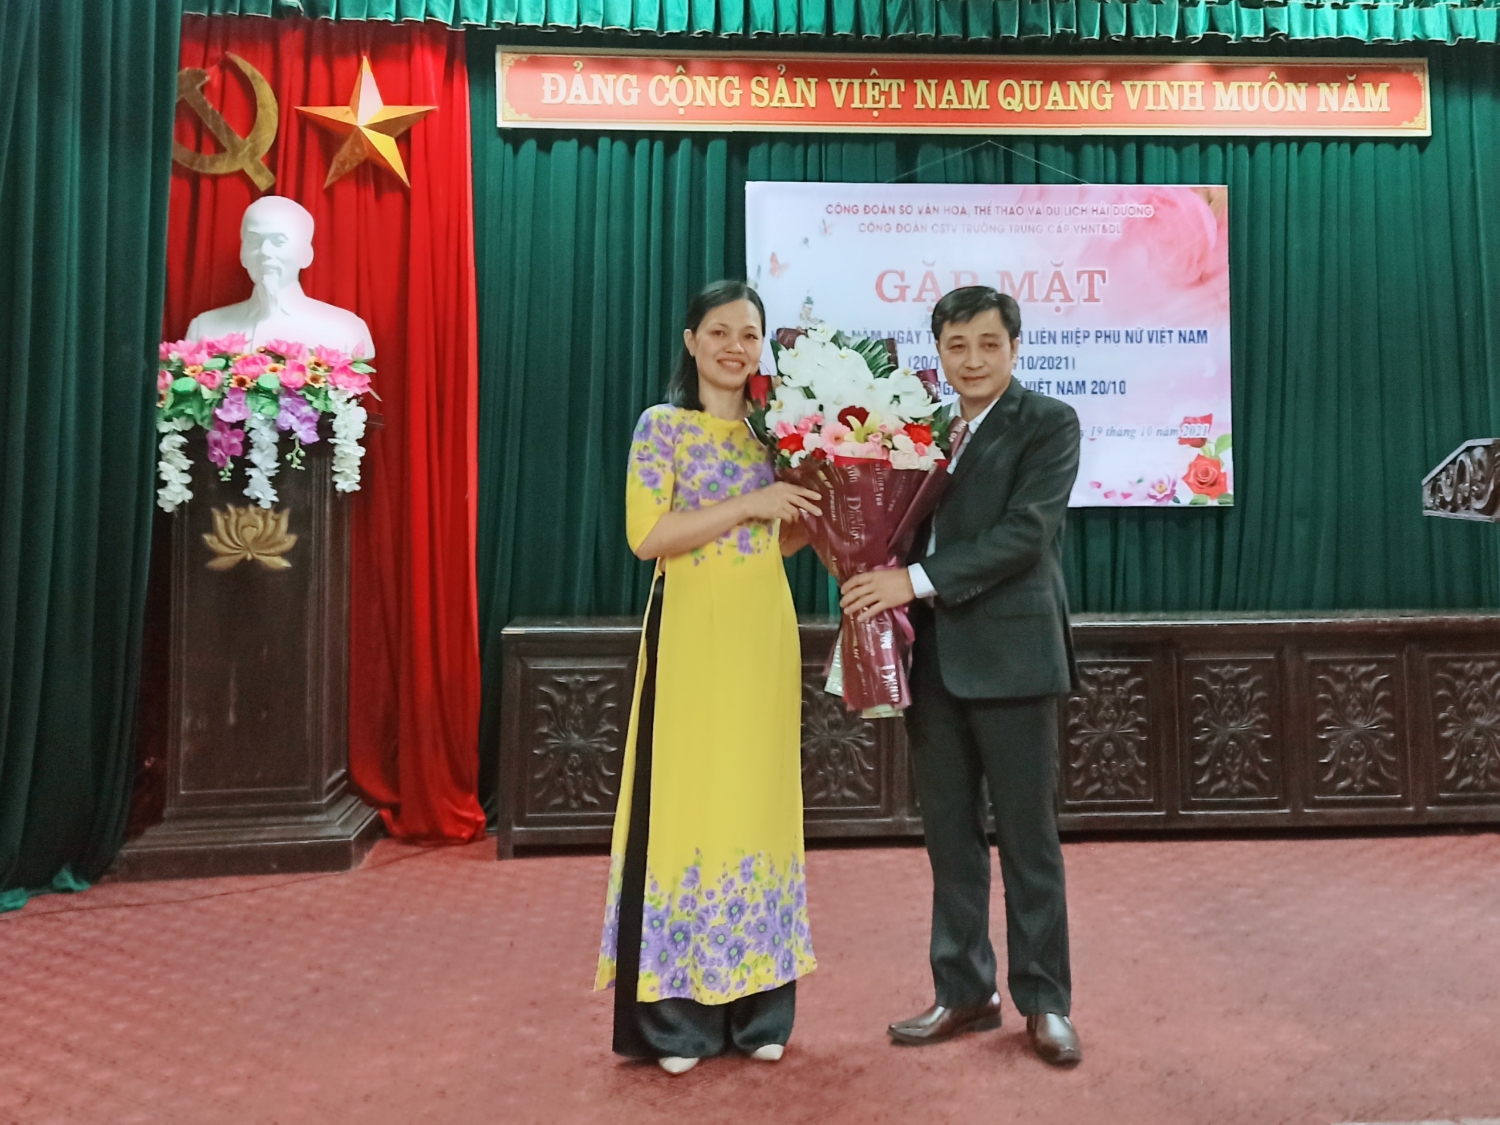 Đồng chí Mai Xuân Tuấn - Bí thư chi bộ, Hiệu trưởng nhà trường tặng hoa chúc mừng tập thể nữ cán bộ, giáo viên, nhân viên nhà trường